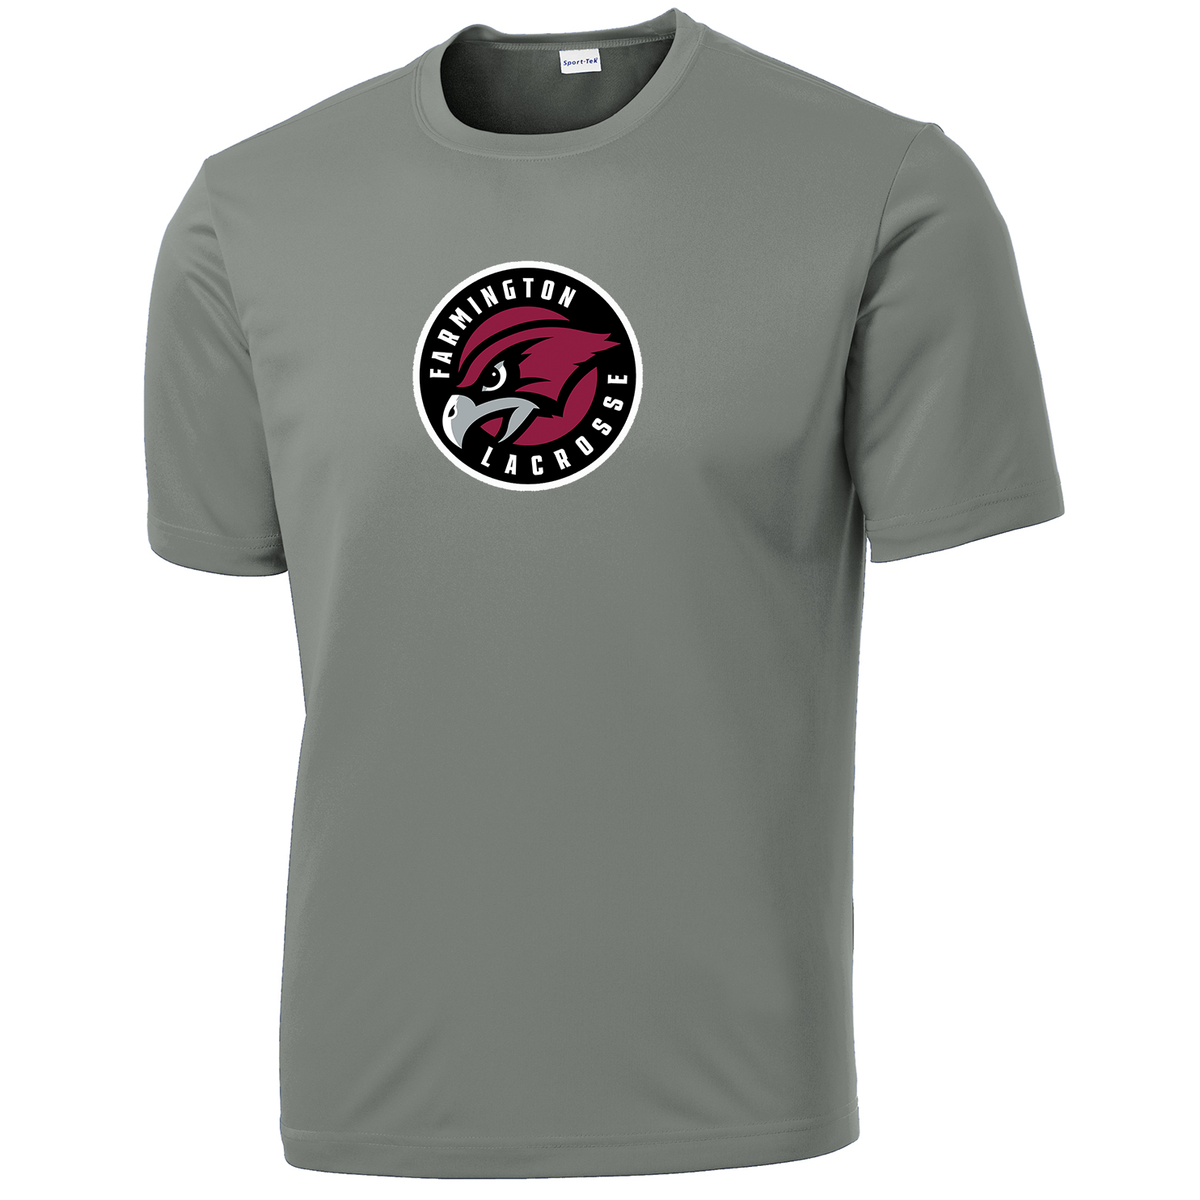 Farmington Lacrosse Performance T-Shirt